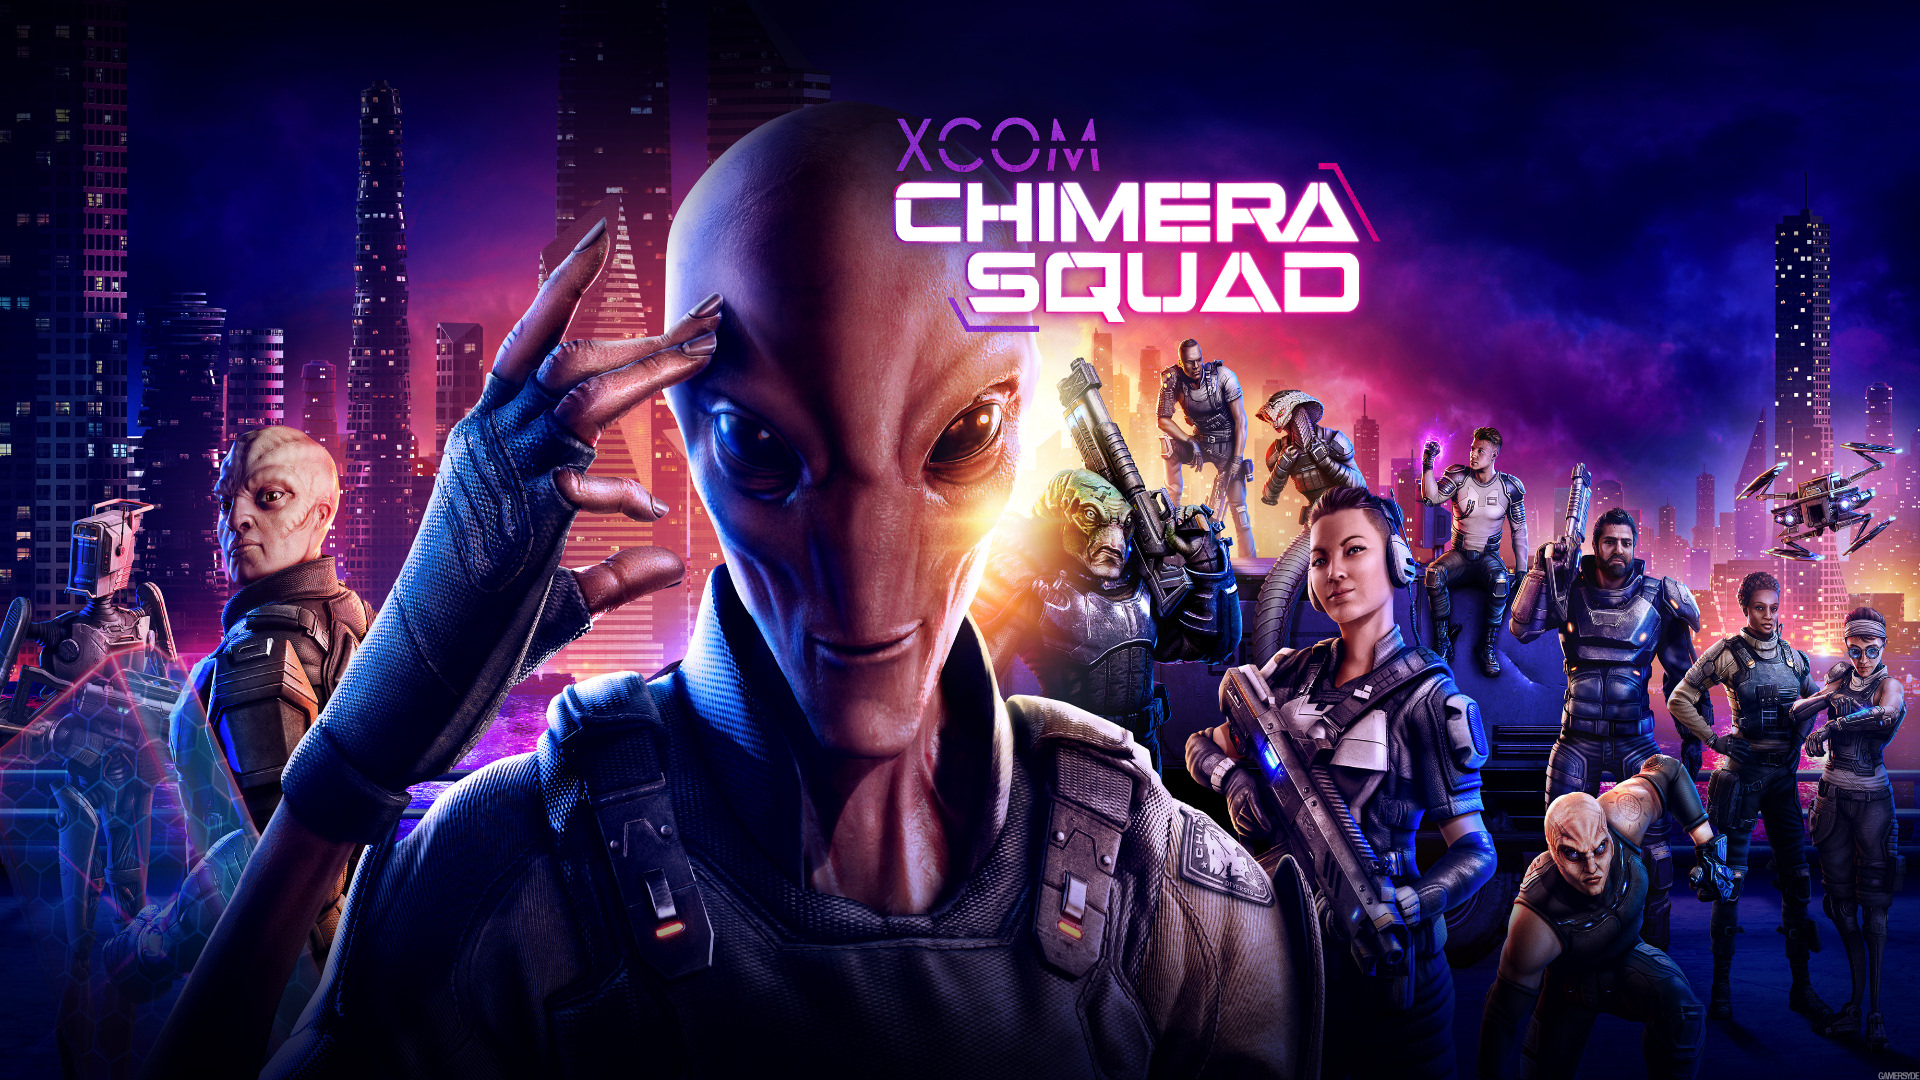 احتمال عرضه بازی XCOM: Chimera Squad برای پلی استیشن 4 و چند پلتفرم دیگر